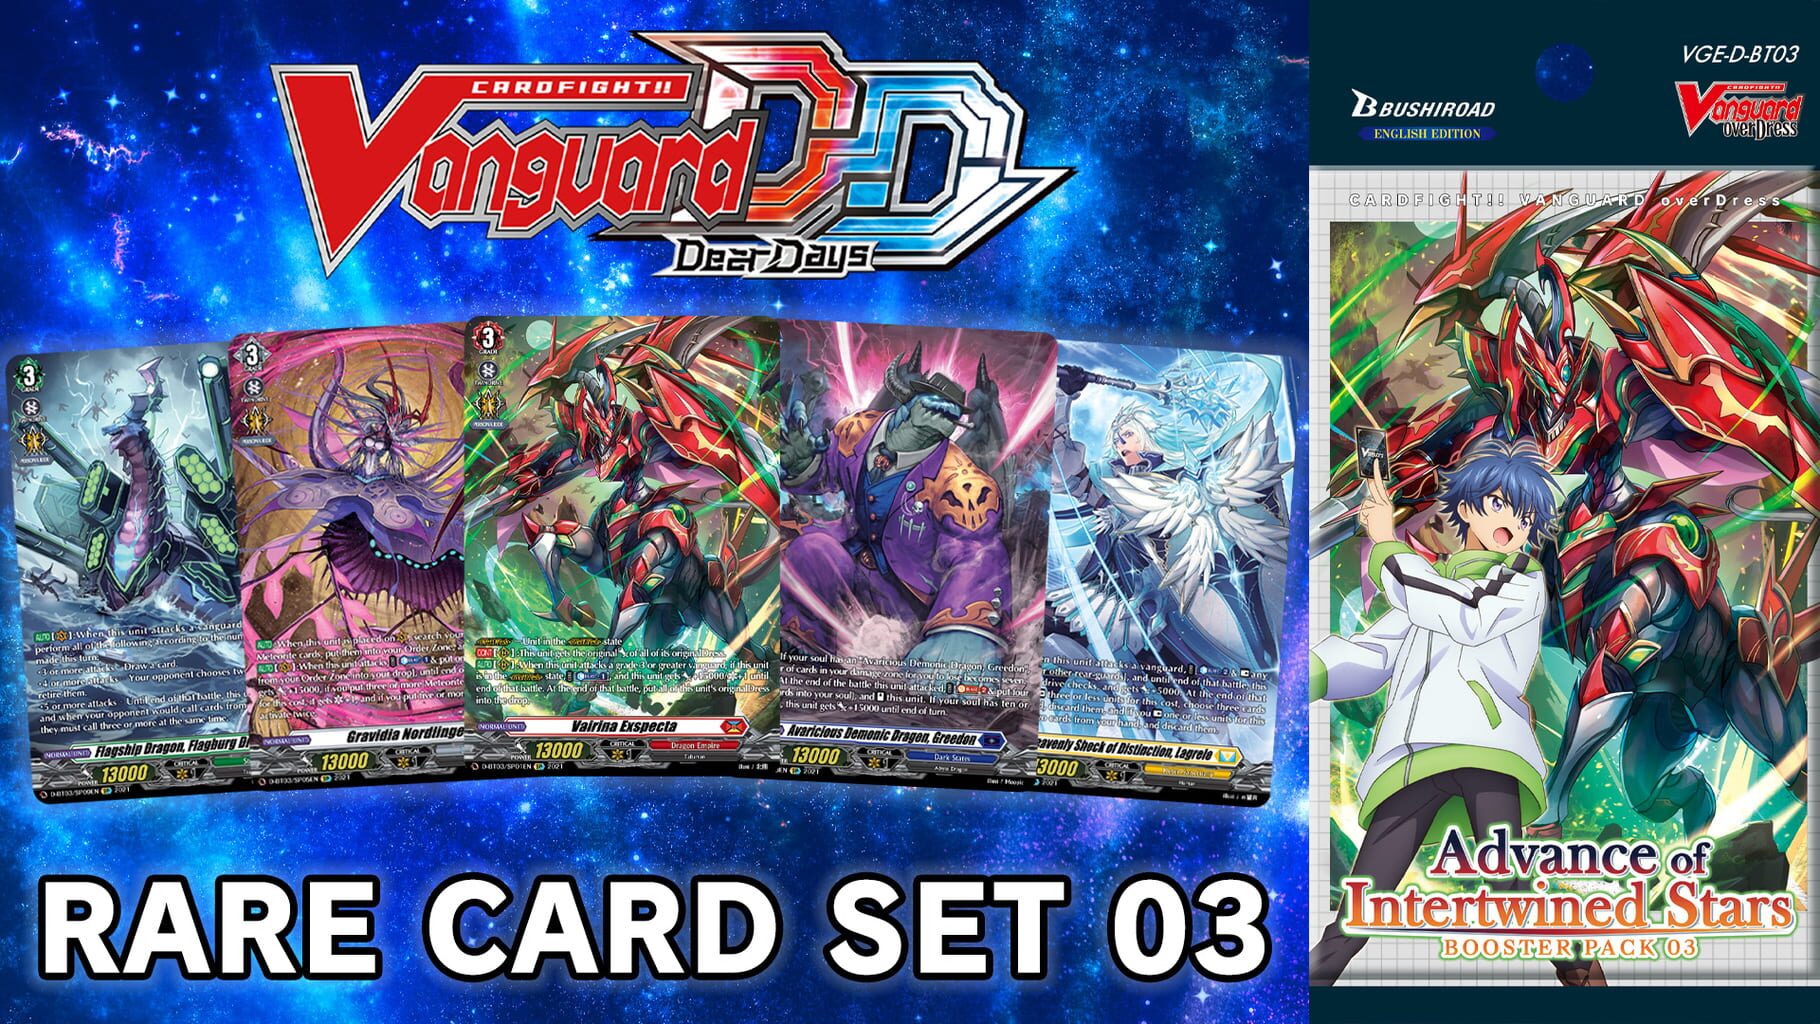 Cardfight!! Vanguard: Dear Days - Rare Card Set 03 D-BT03: Advance of Intertwined Stars artwork